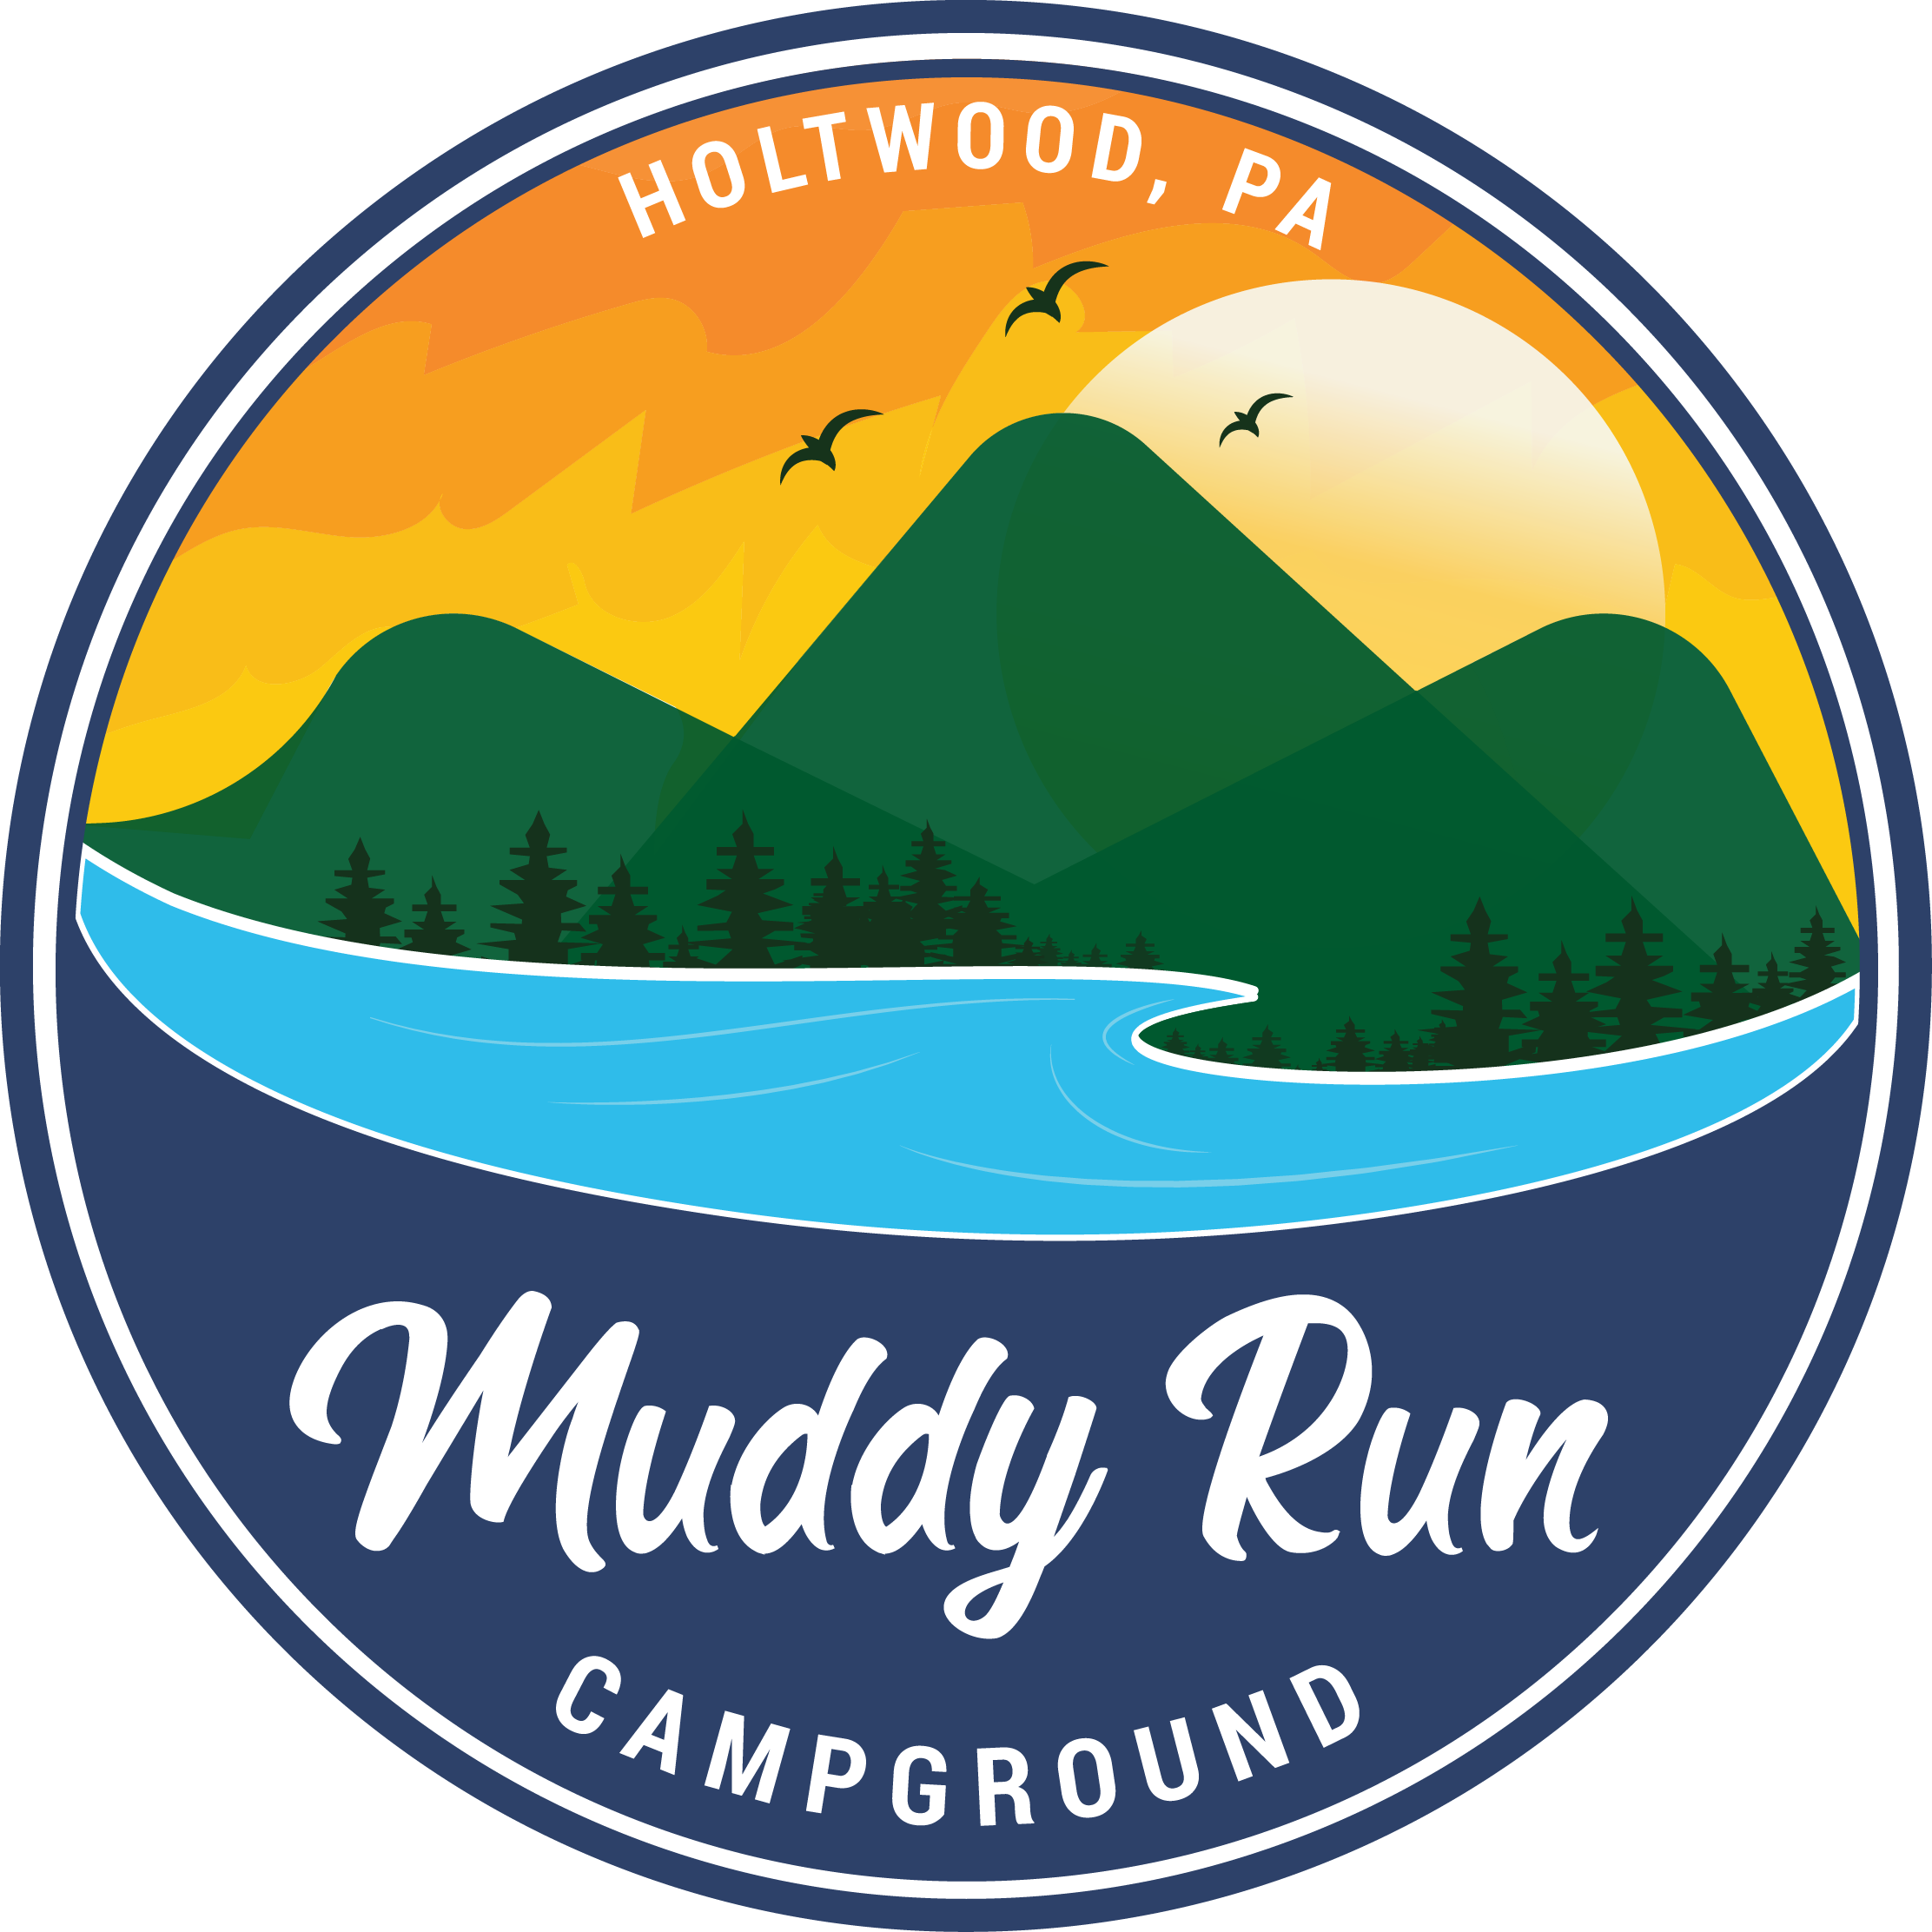 Muddy Run Campground